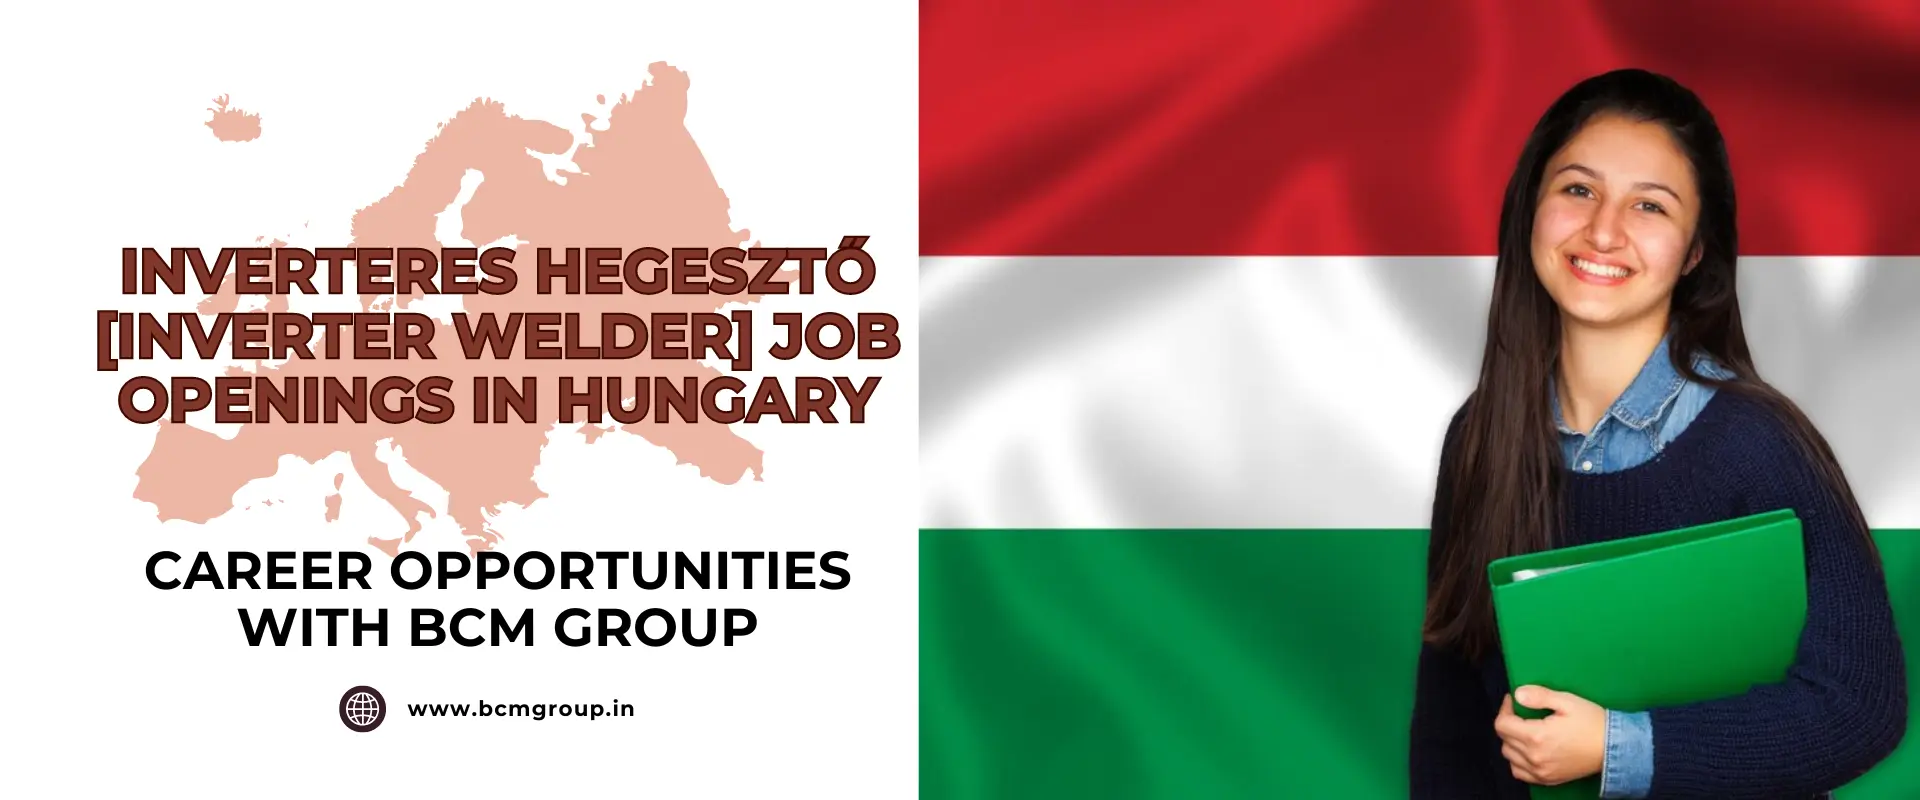 INVERTERES HEGESZTŐ [INVERTER WELDER] JOB OPENINGS IN HUNGARY